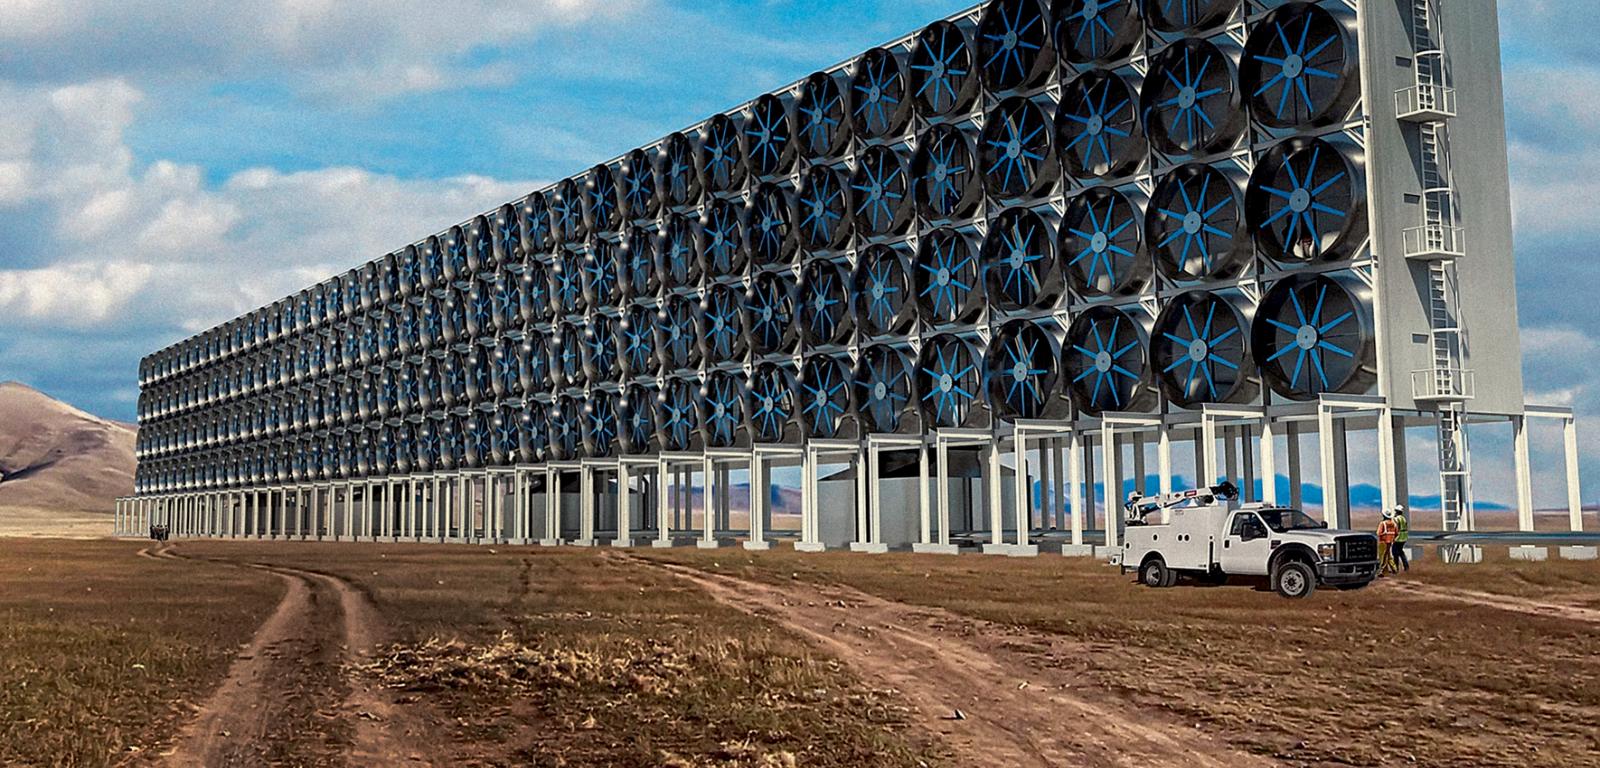 Instalacja kanadyjskiej firmy Carbon Engineering. Pomysł nagrodzony 600 mln dol. przez amerykański Departament Energii.